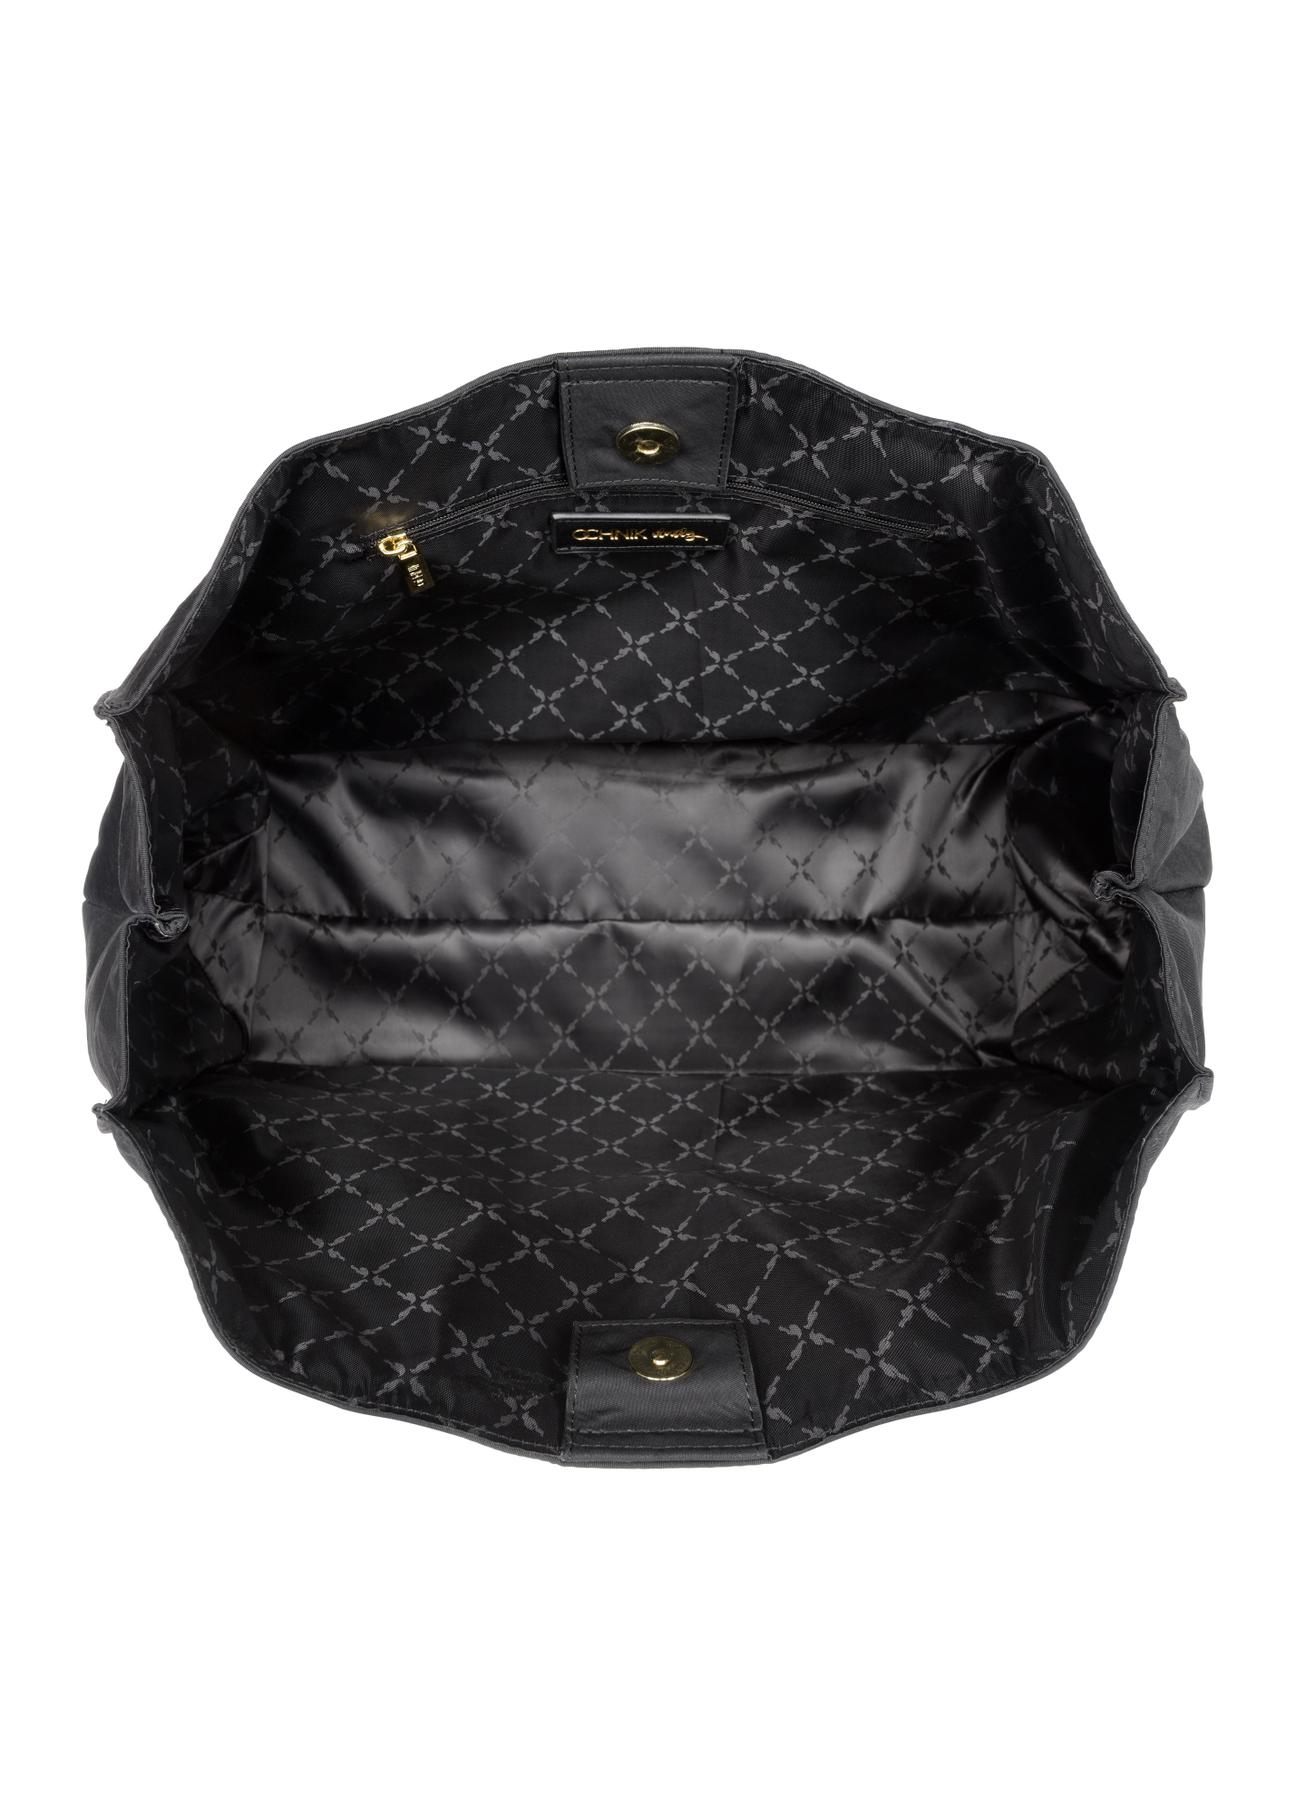 Czarna torebka damska typu tote bag TOREN-0248-99(W23)